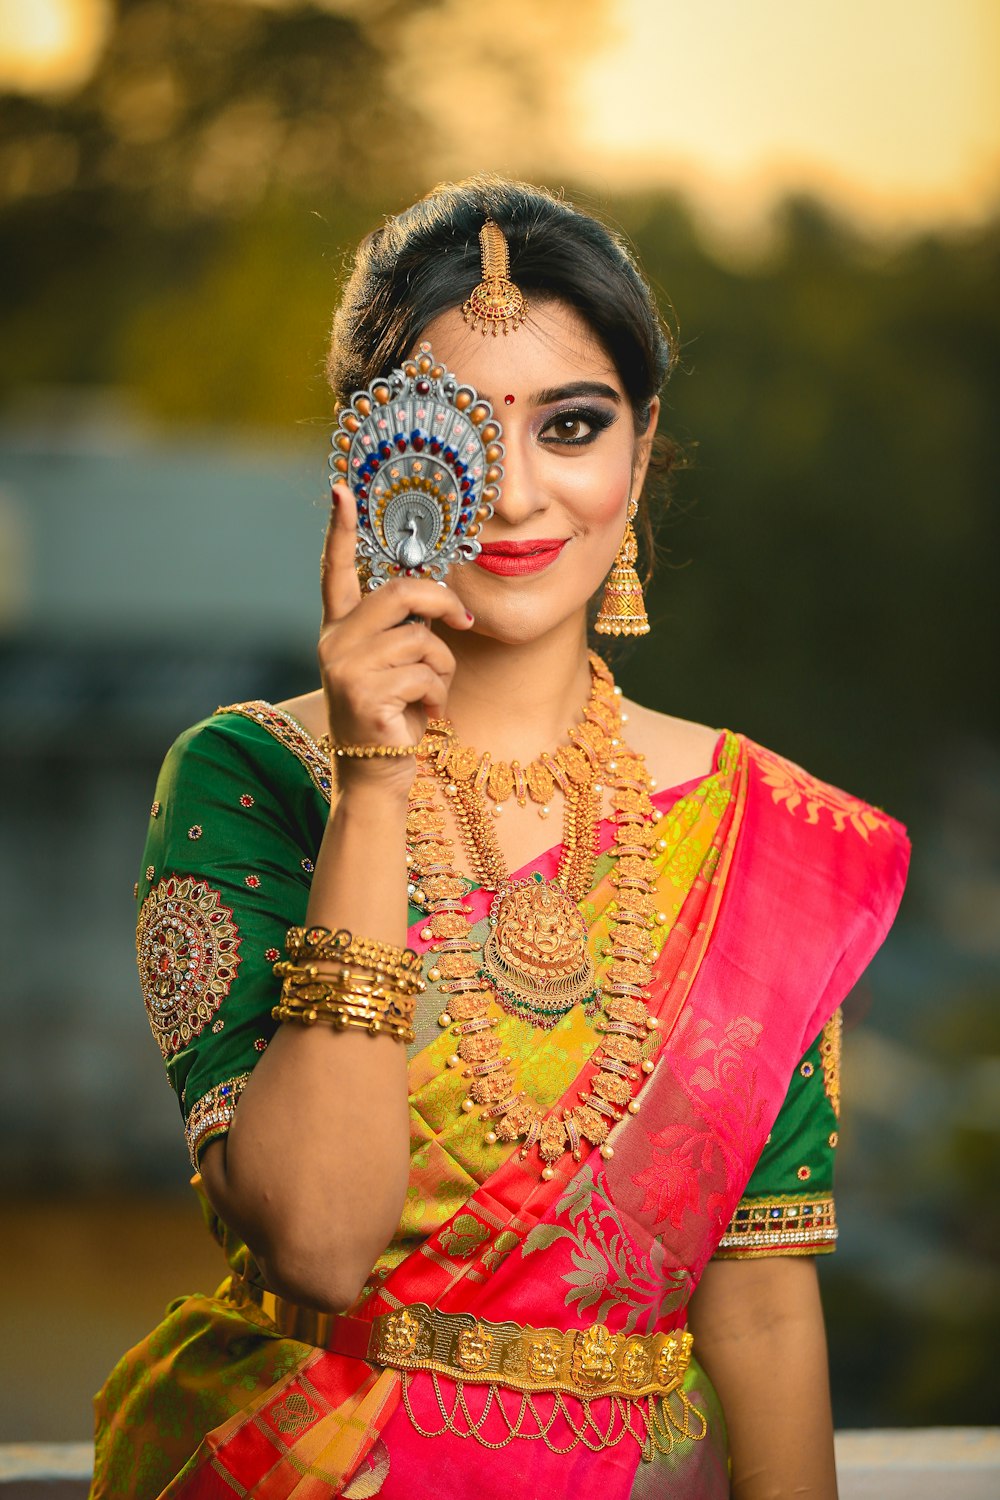 Frau im grünen, goldenen und roten Sari-Kleid, die ihr rechtes Auge verbirgt, während sie lächelt